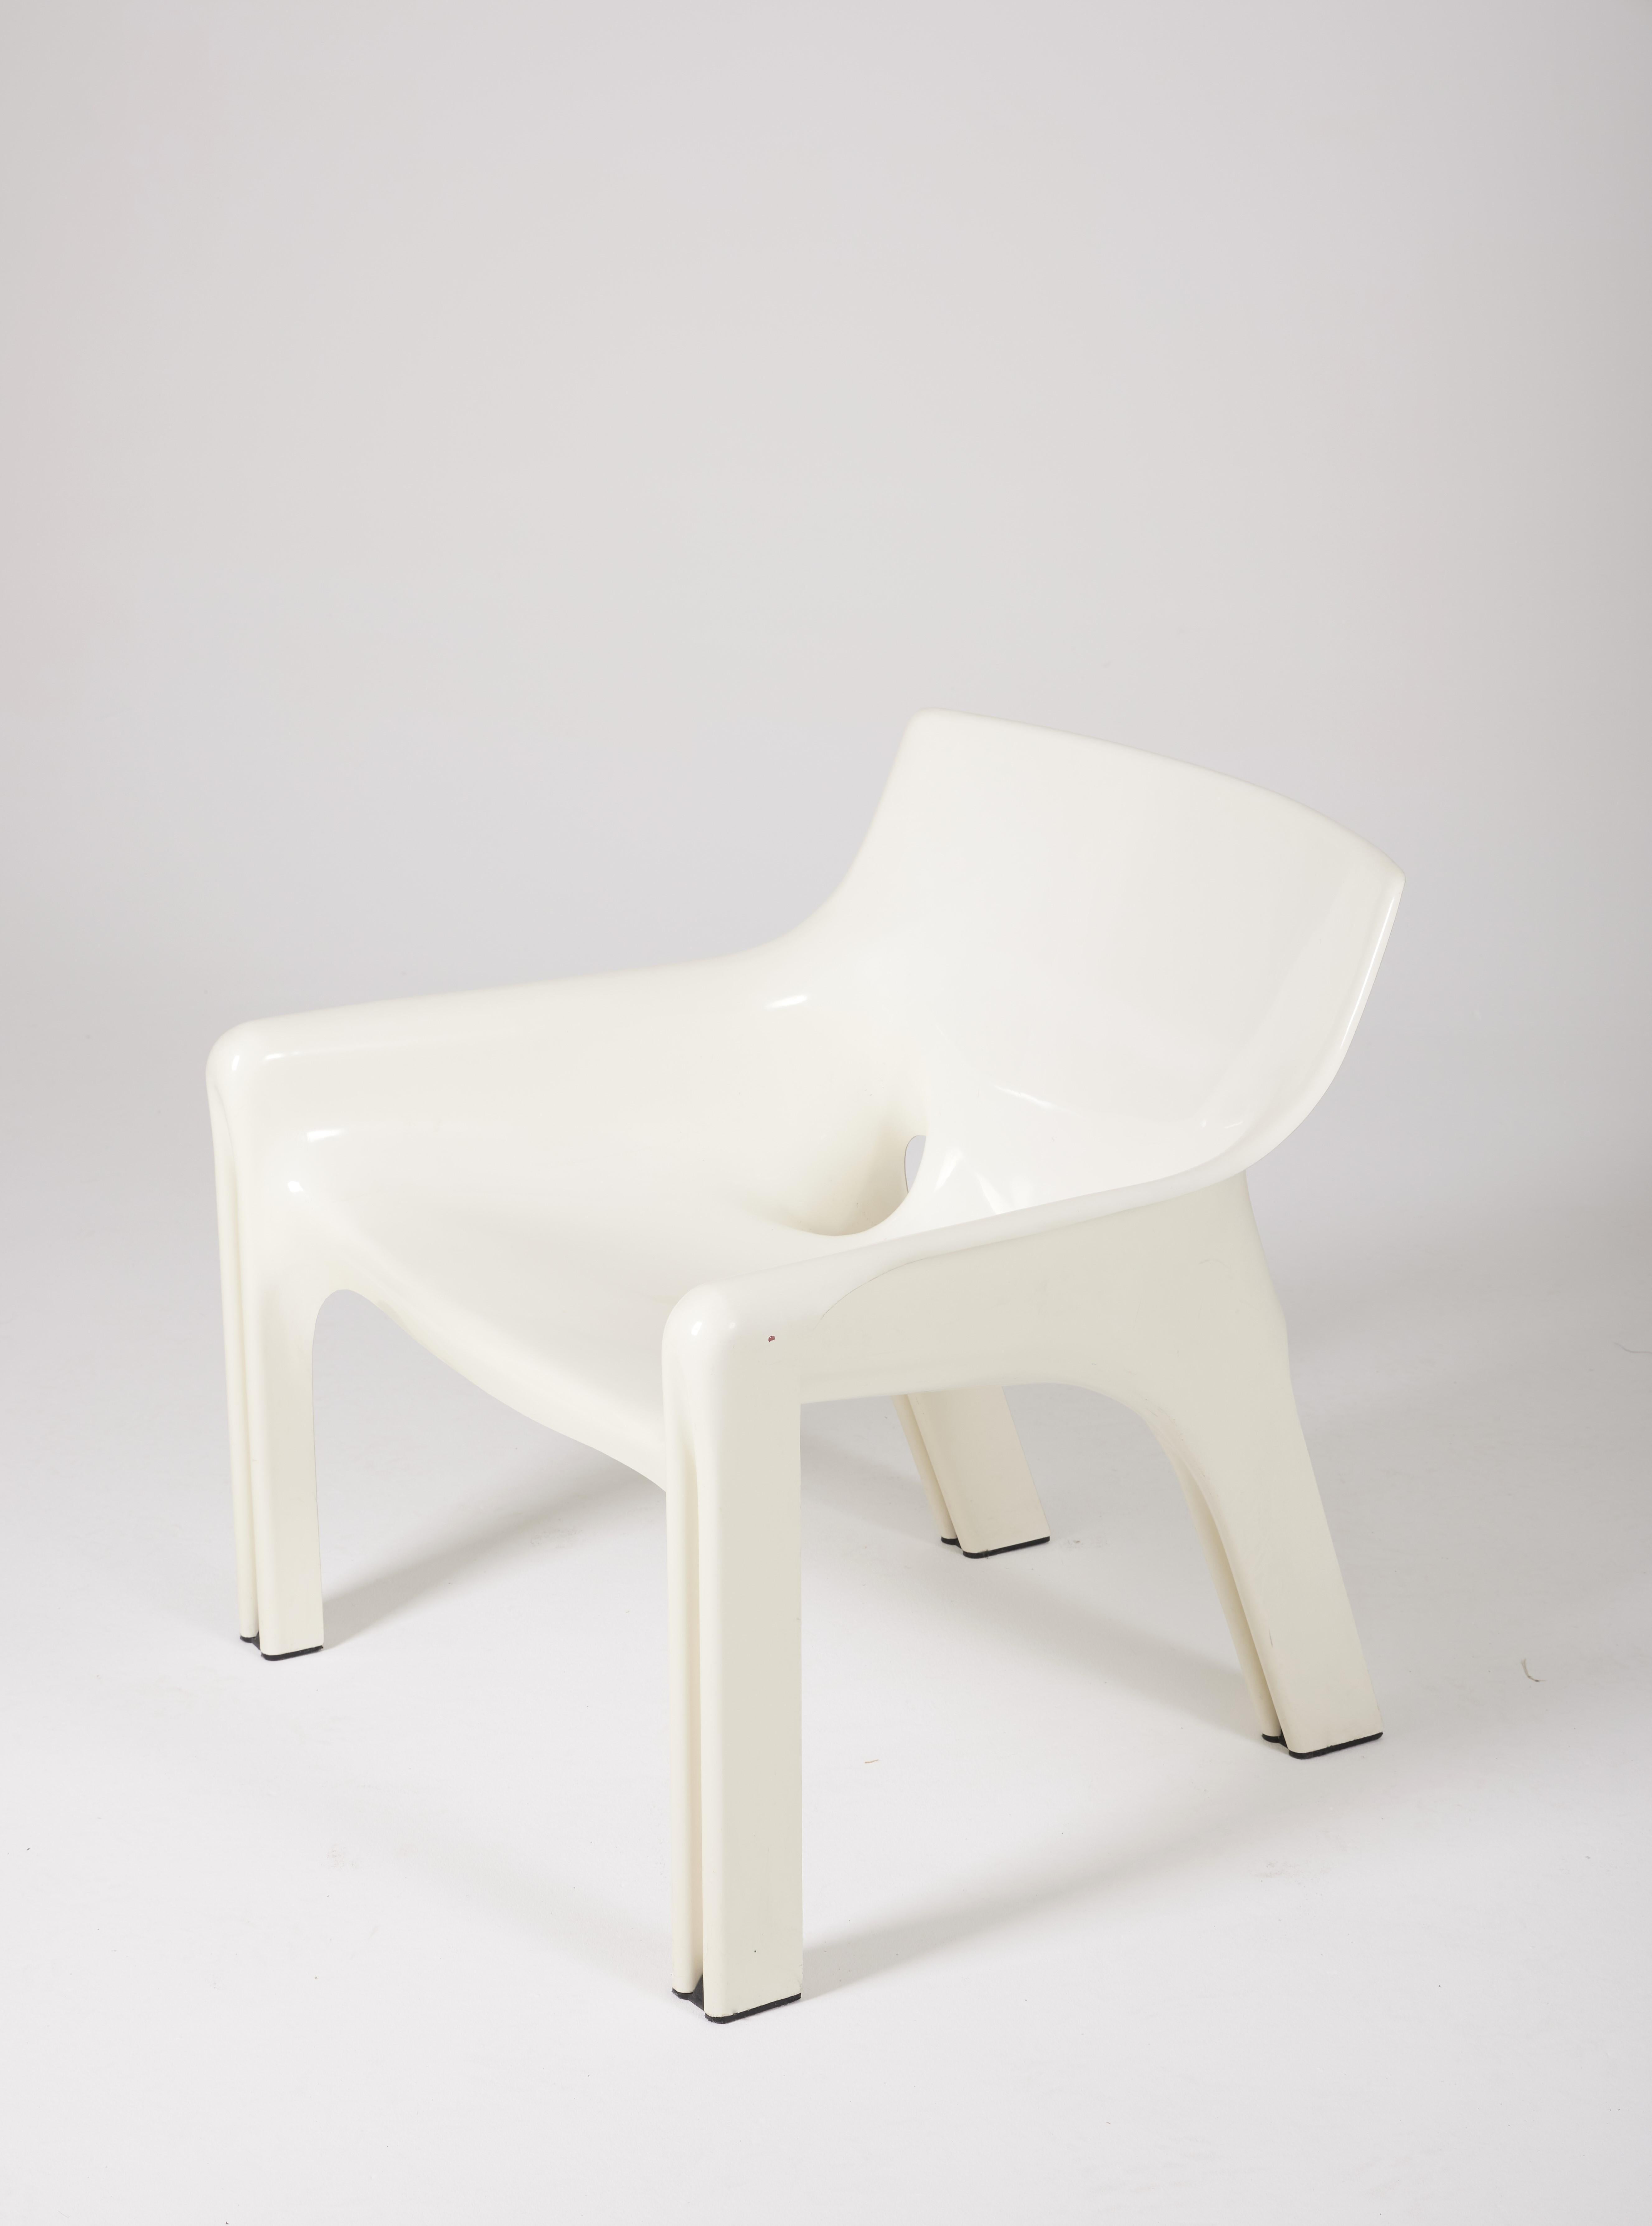 Italian Vicario Chair Set by Vico Magistretti for Artemide, 1972